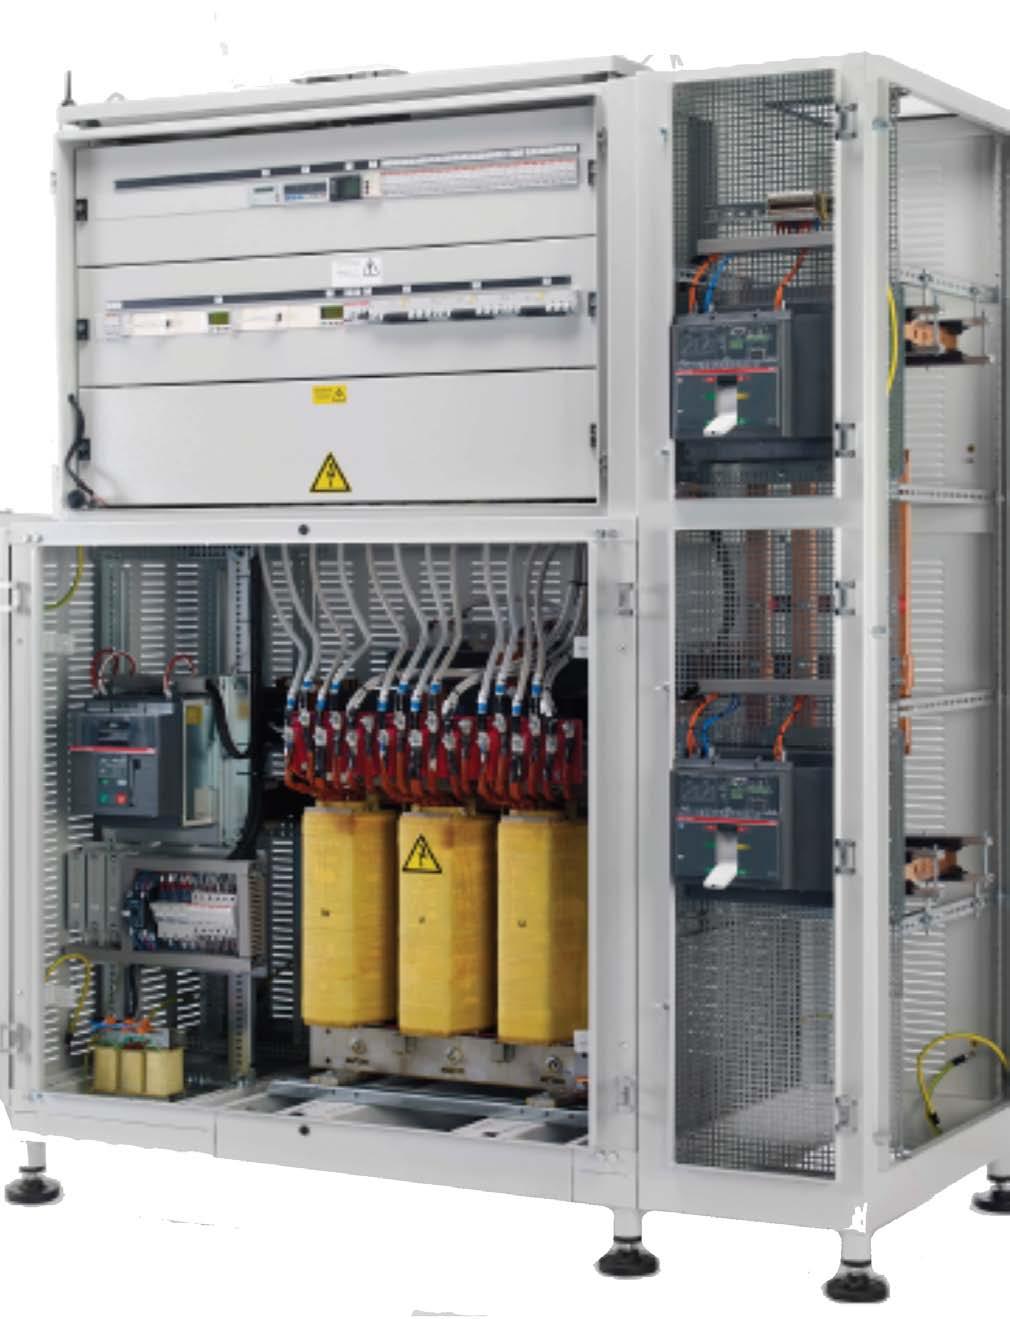 Die EPplus-Technik Für stromintensive Unternehmen! Mit dem Einsatz des EPplus-Systems lässt sich vorhandene Verlustenergie in einem gesamtheitlichen elektrischen Netzwerk reduzieren.